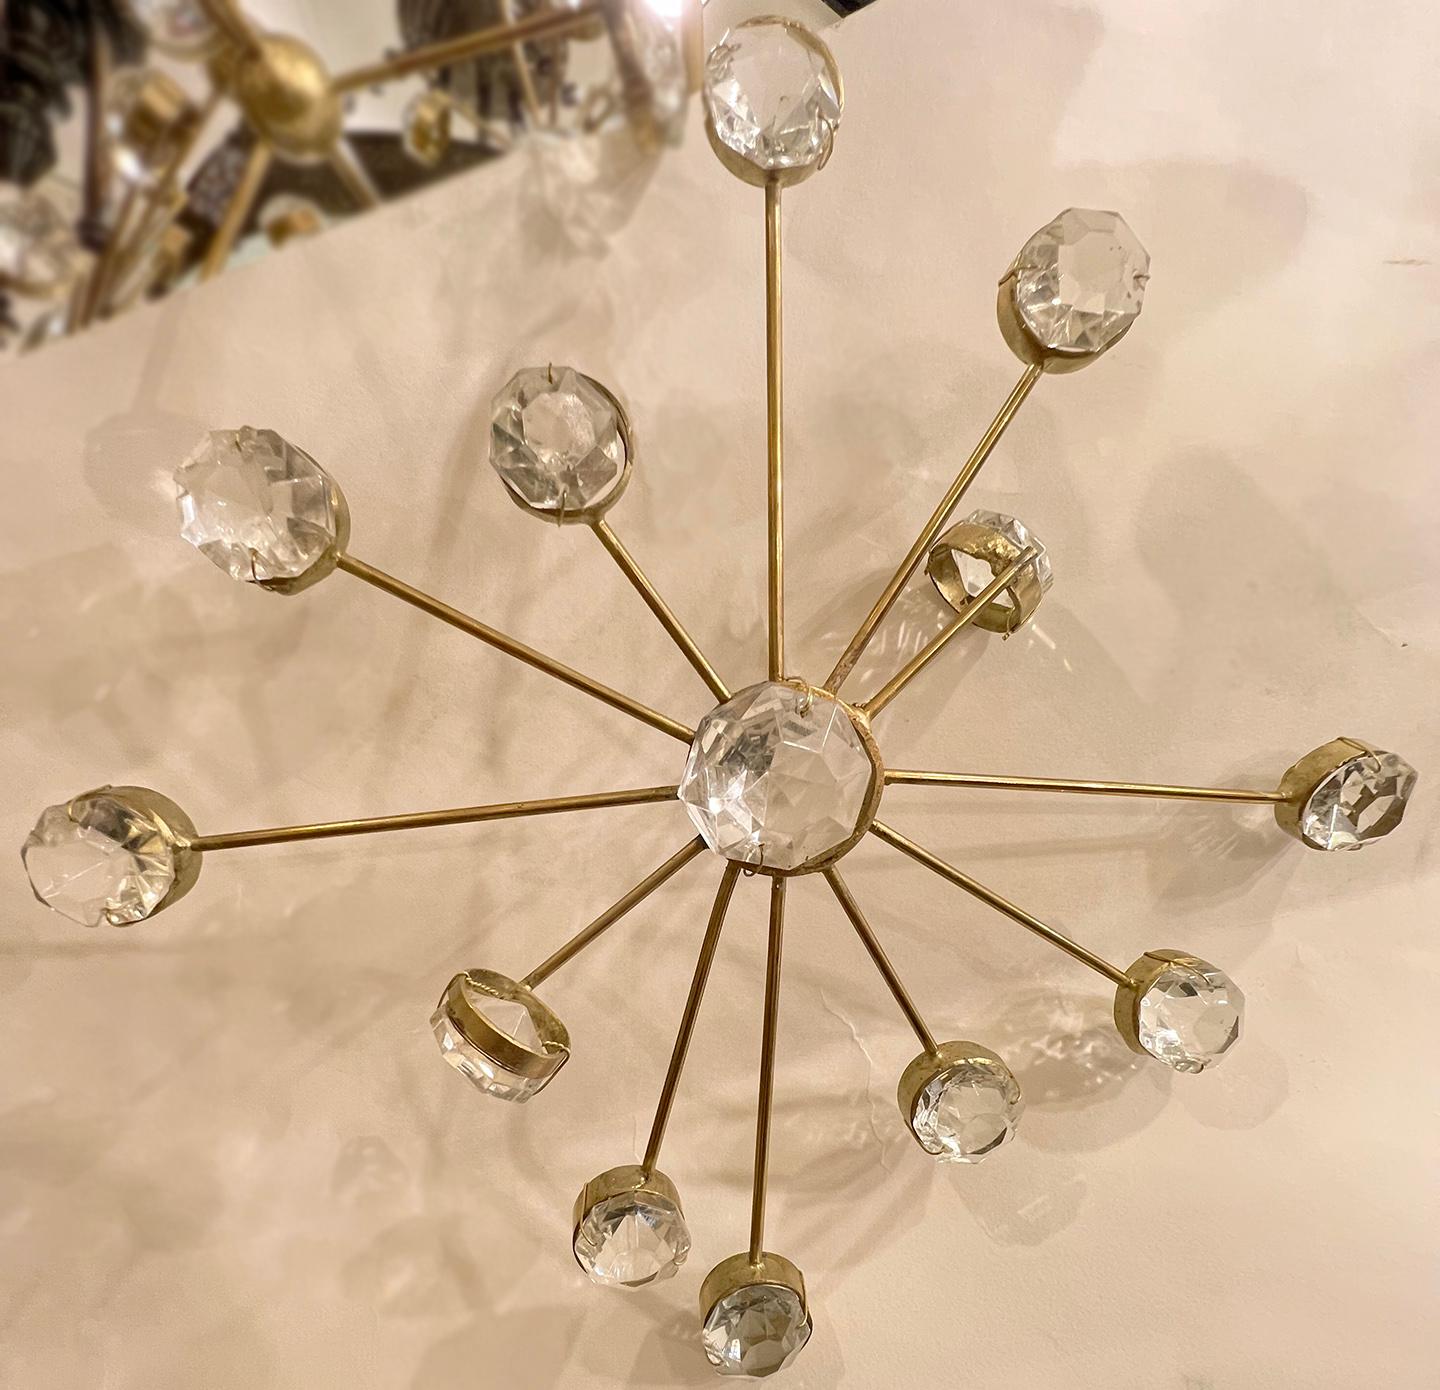 Un lustre sputnik en métal doré français des années 1960 avec six lampes de lustre.

Mesures :
Diamètre : 32